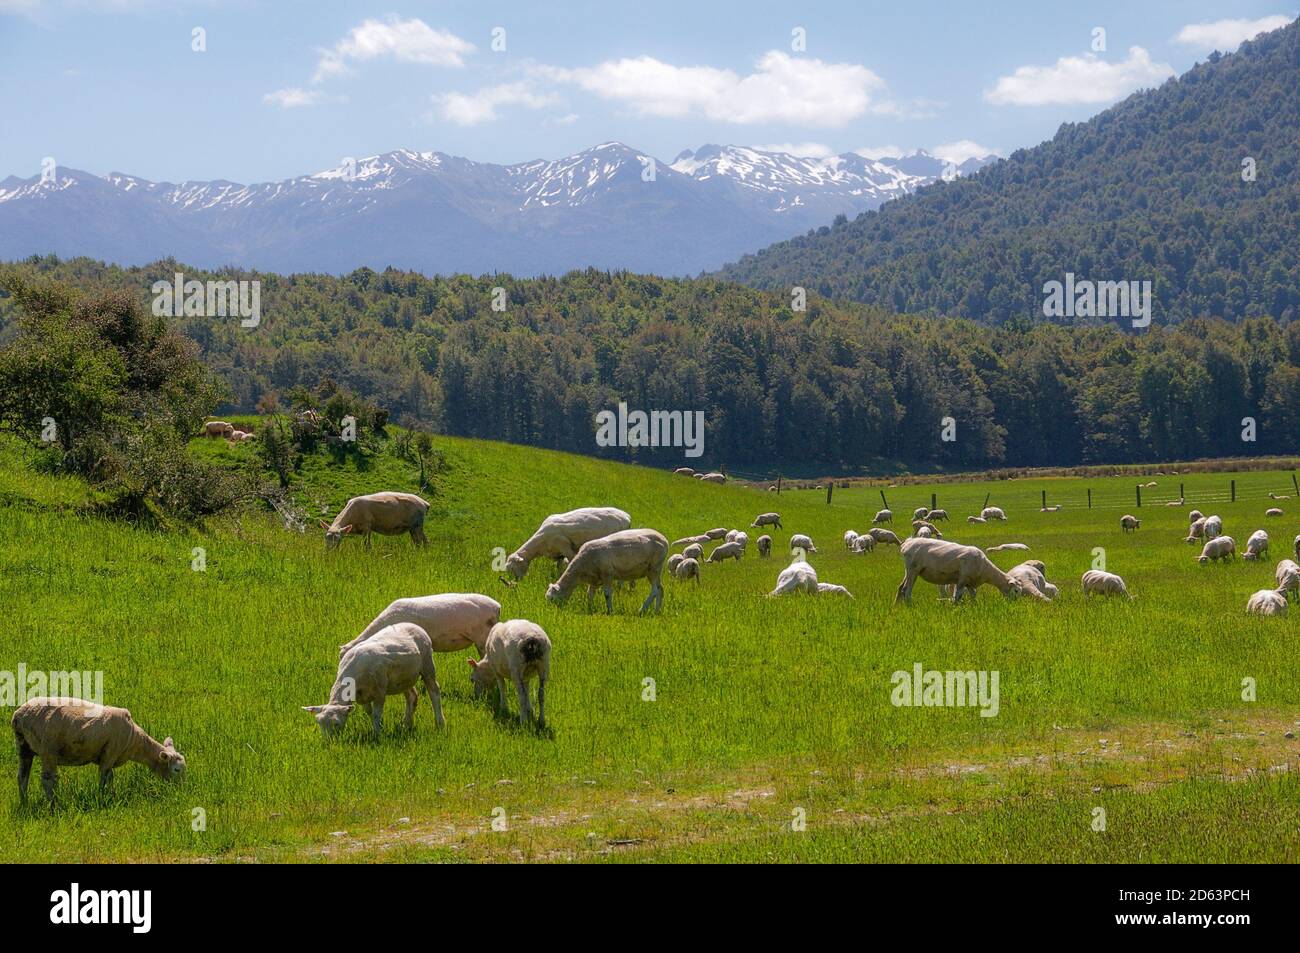 Gregge di pecore che pascolano in un prato verde di fronte ad alberi e una catena montuosa. Isola del Sud, Nuova Zelanda. Foto Stock